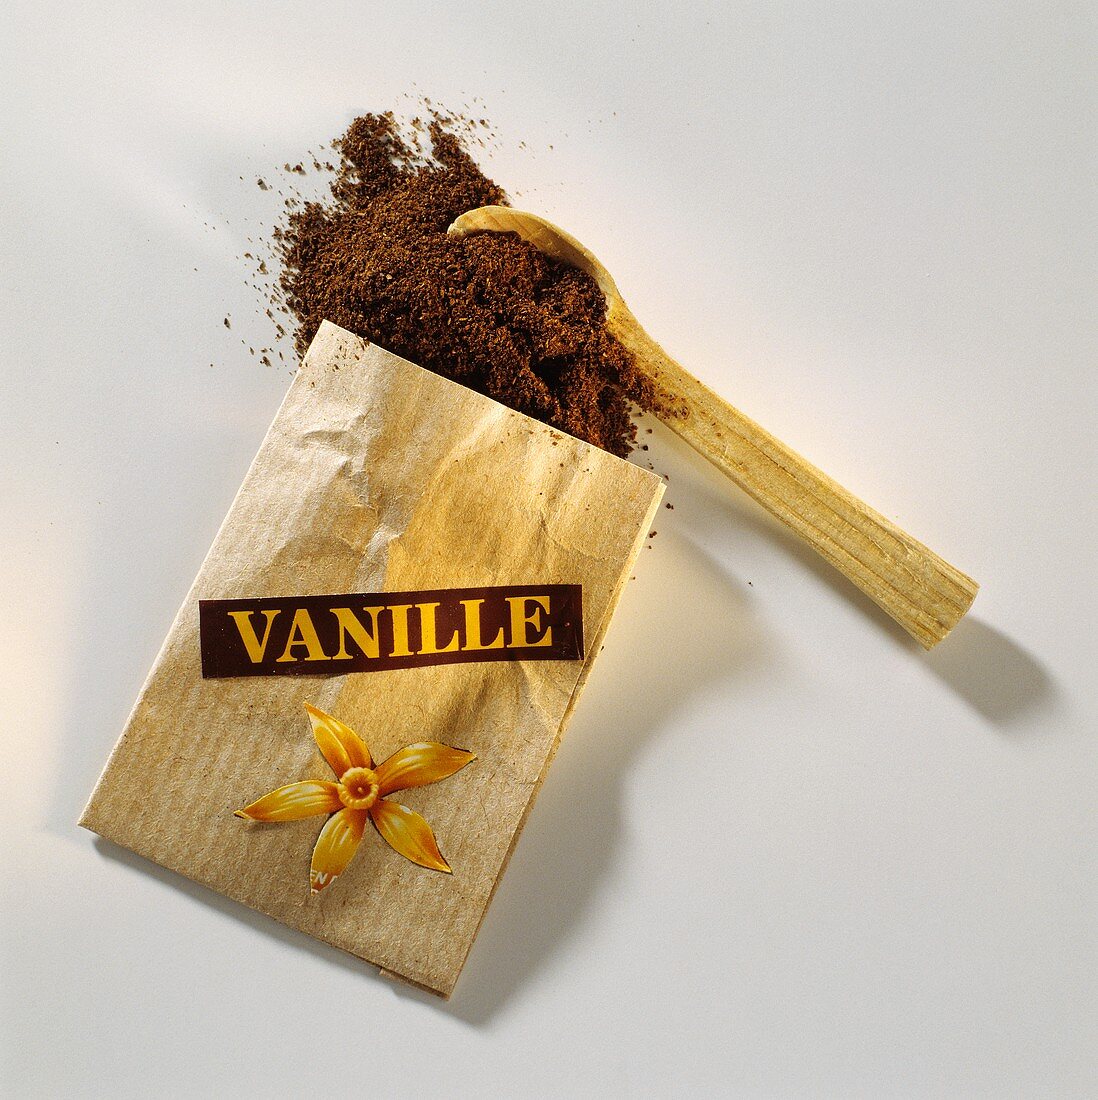 Vanillepulver aus einer Tüte mit Aufschrift Vanille & Löffel